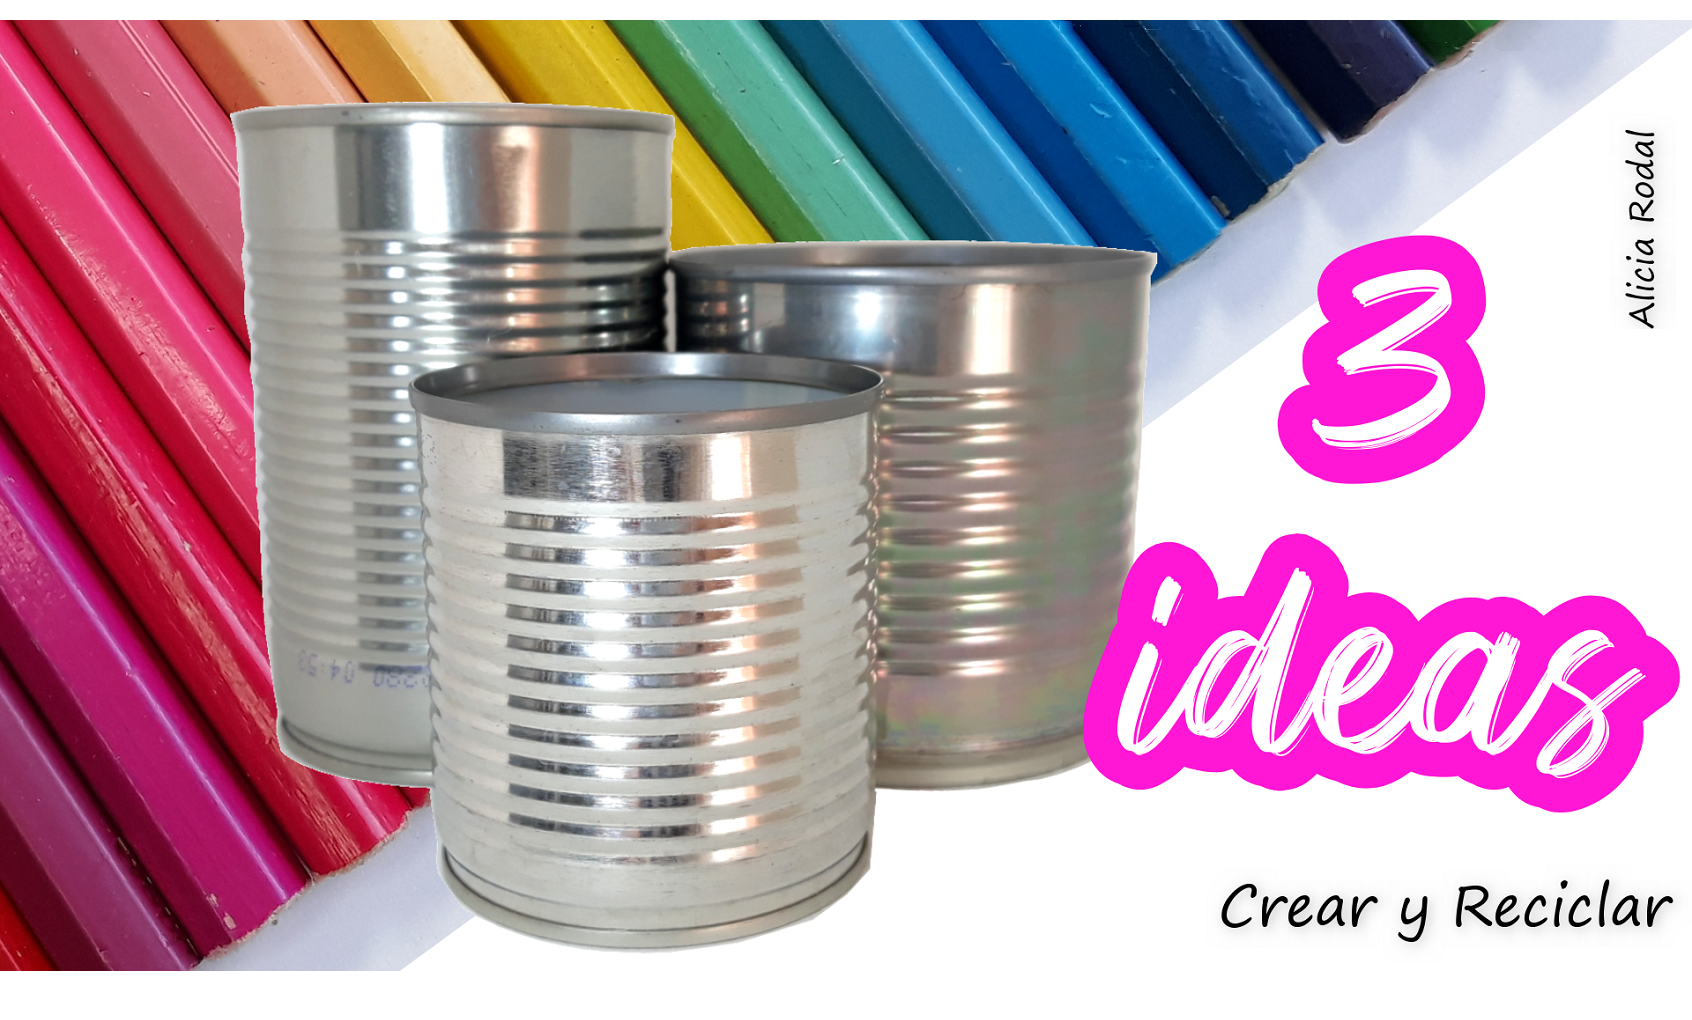 Incomodidad congelador Separar 3 ideas divertidas para decorar latas de aluminio - Crear y Reciclar